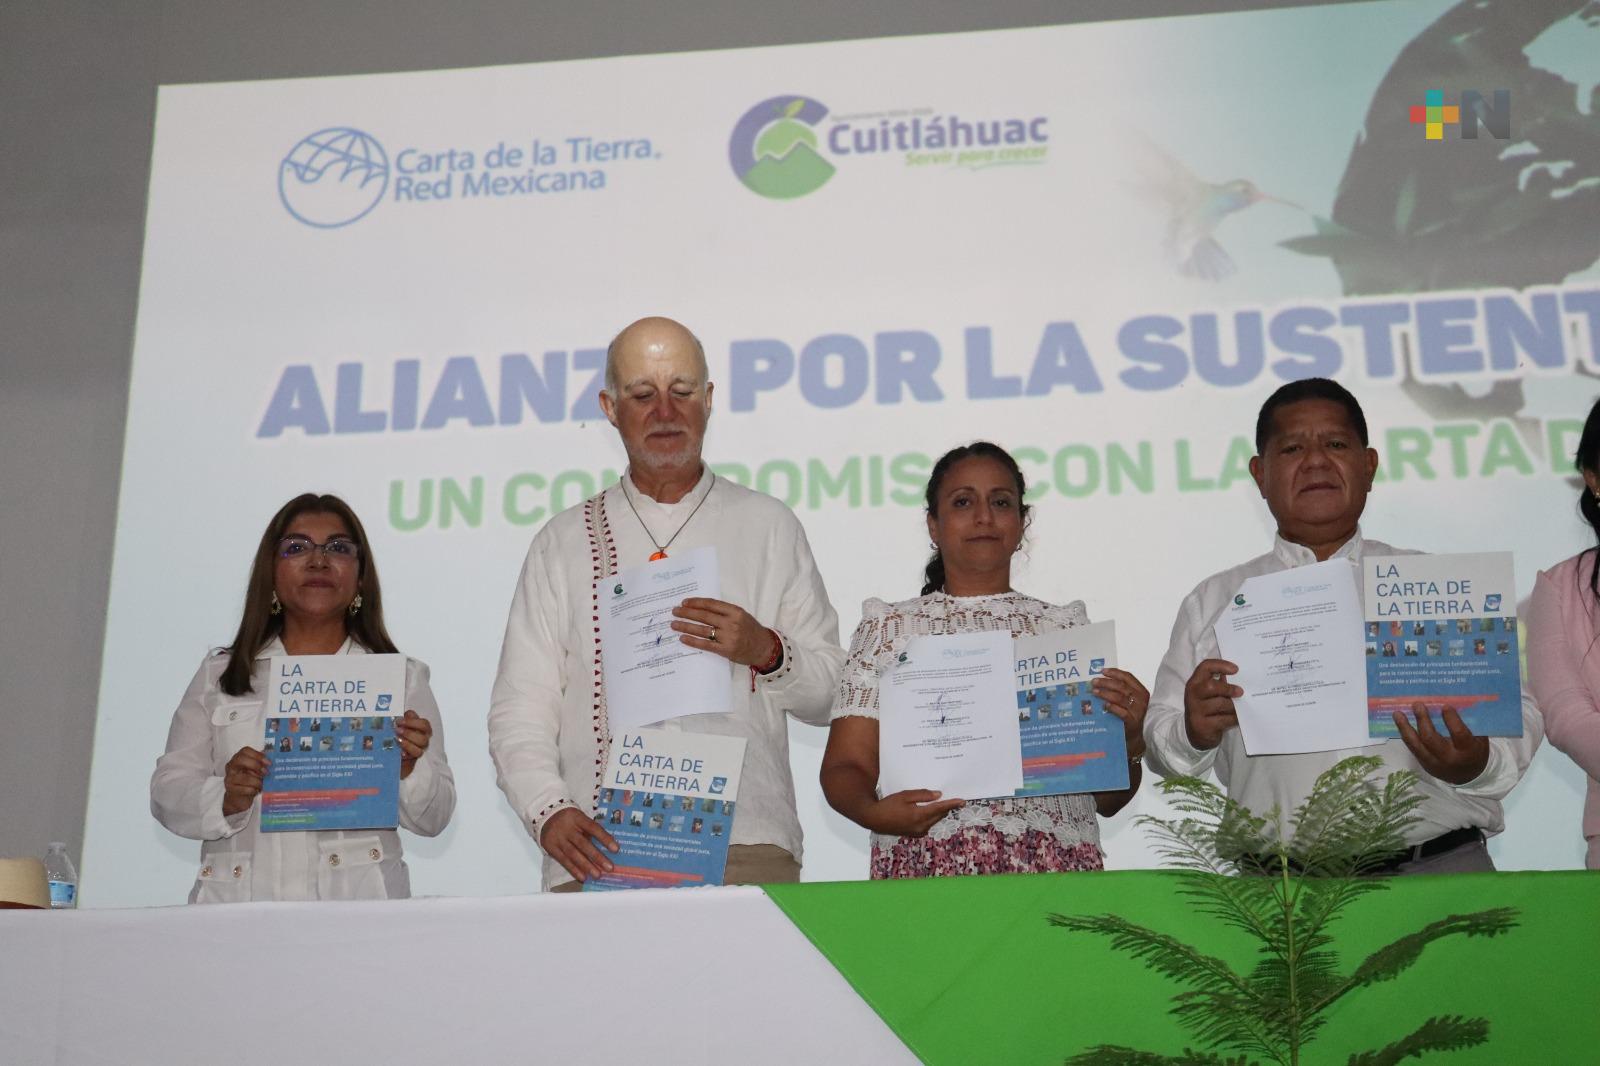 Firman Ayuntamiento de Cuitláhuac e iniciativa «Carta a la Tierra» convenio por la sustentabilidad